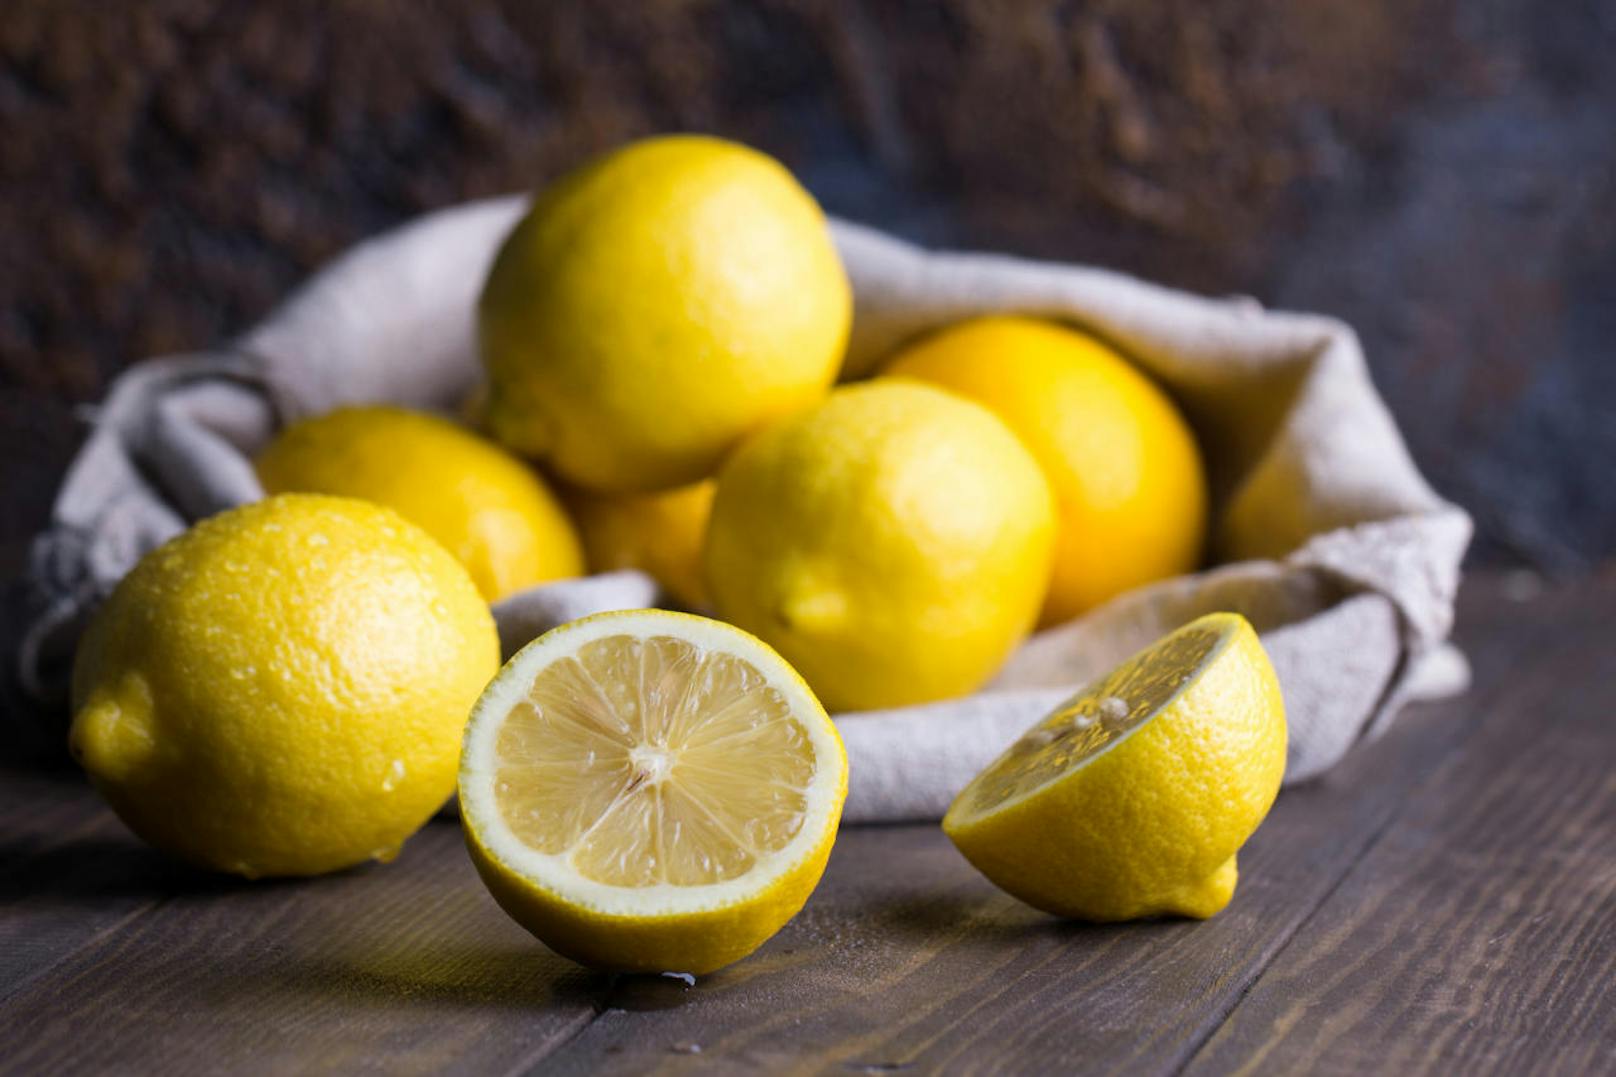 Die <b>Zitrone </b>gilt nicht umsonst als Klassiker unter den Früchten: Reich an Vitamin C, unterstützt sie das Immunsystem. Ihr Saft regt zudem die Verdauung an und hilft, den Magen-Darm-Trakt zu entgiften. Außerdem wirkt er gegen die Bildung und Vermehrung unerwünschter Bakterien im Darm.